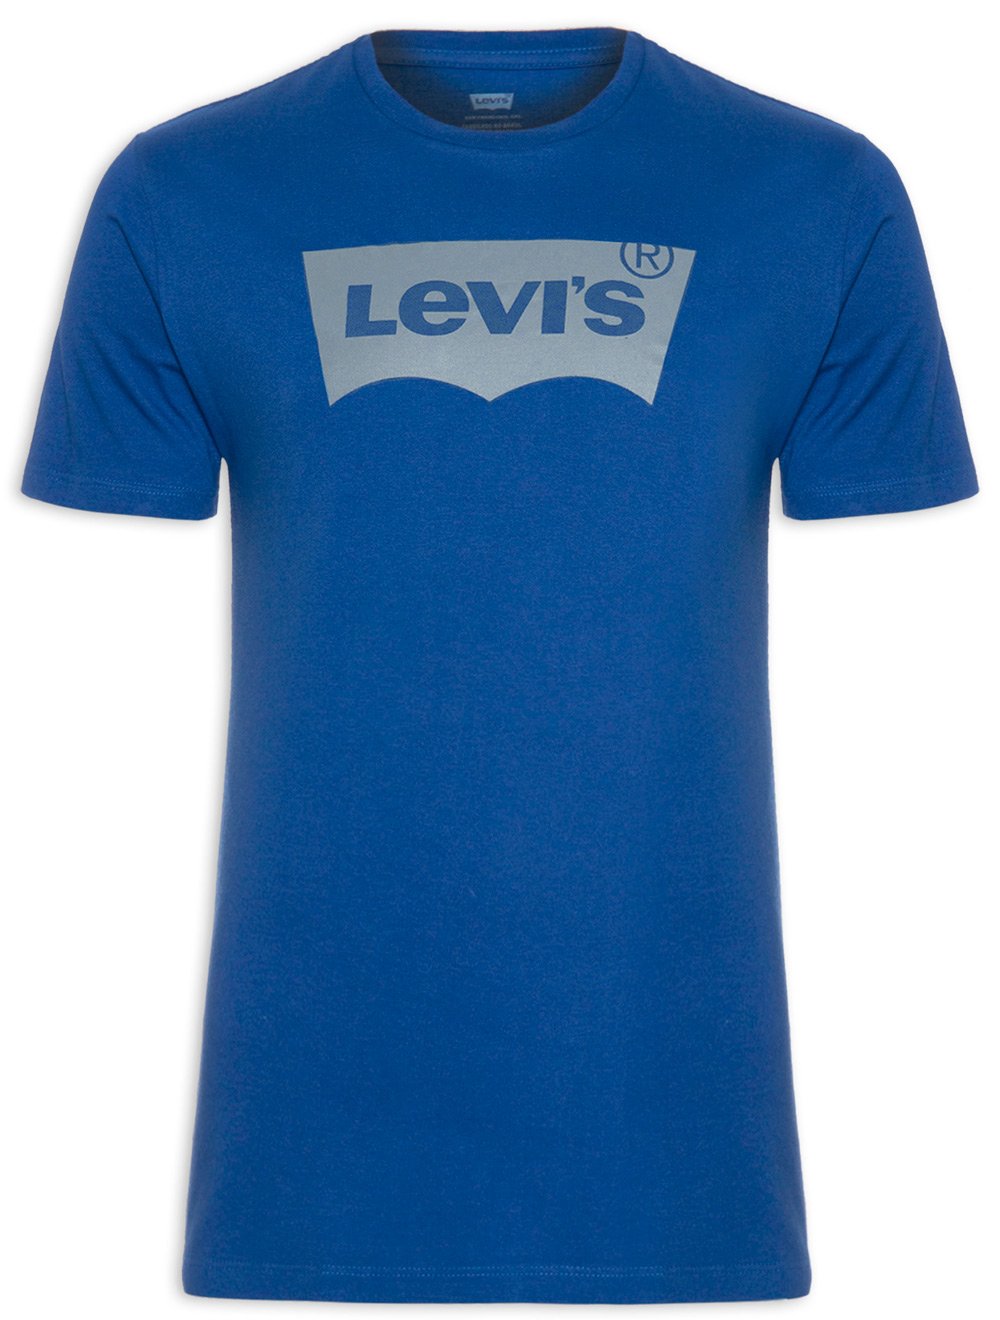 Camiseta Levis Masculina Short Sleeve Graphic Azul Royal